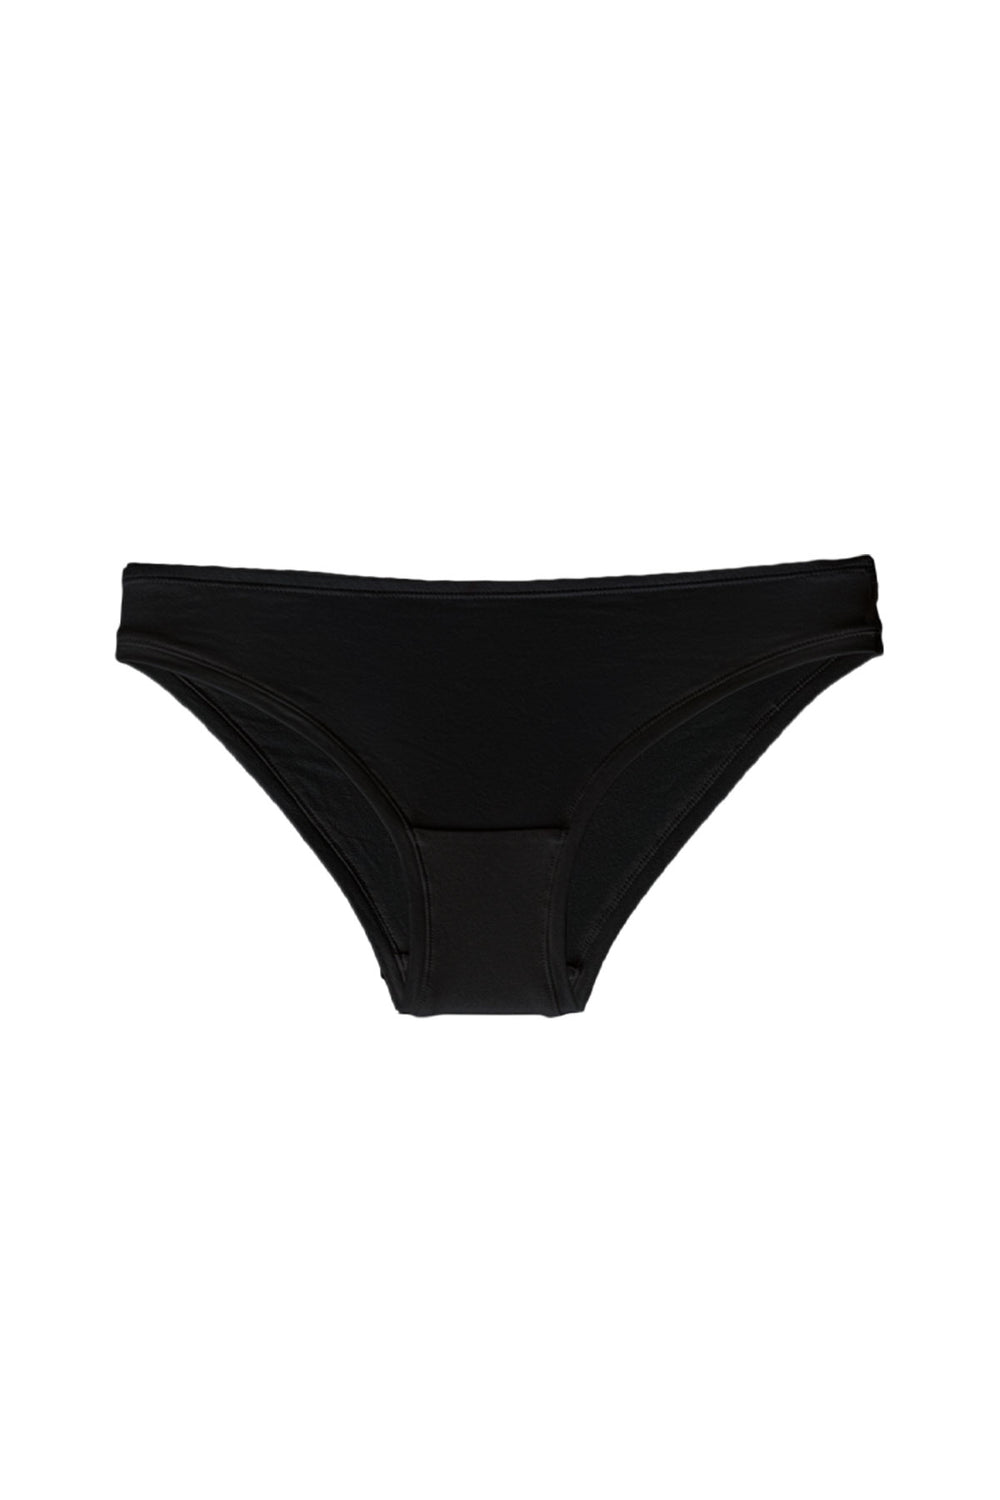 Bikini style organic cotton brief in black – Eco Intimates